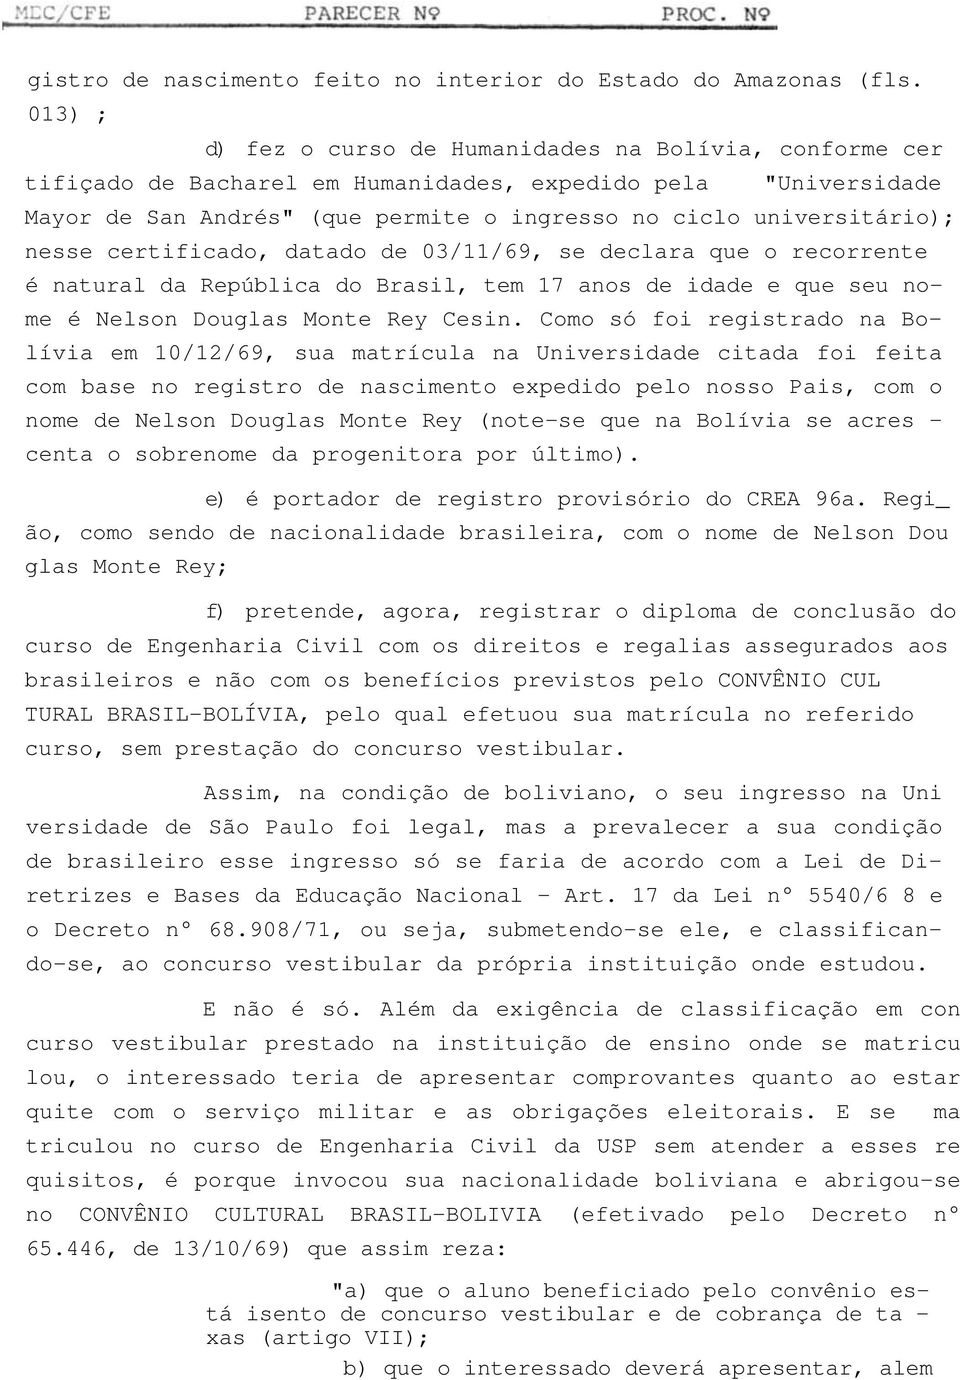 nesse certificado, datado de 03/11/69, se declara que o recorrente é natural da República do Brasil, tem 17 anos de idade e que seu nome é Nelson Douglas Monte Rey Cesin.